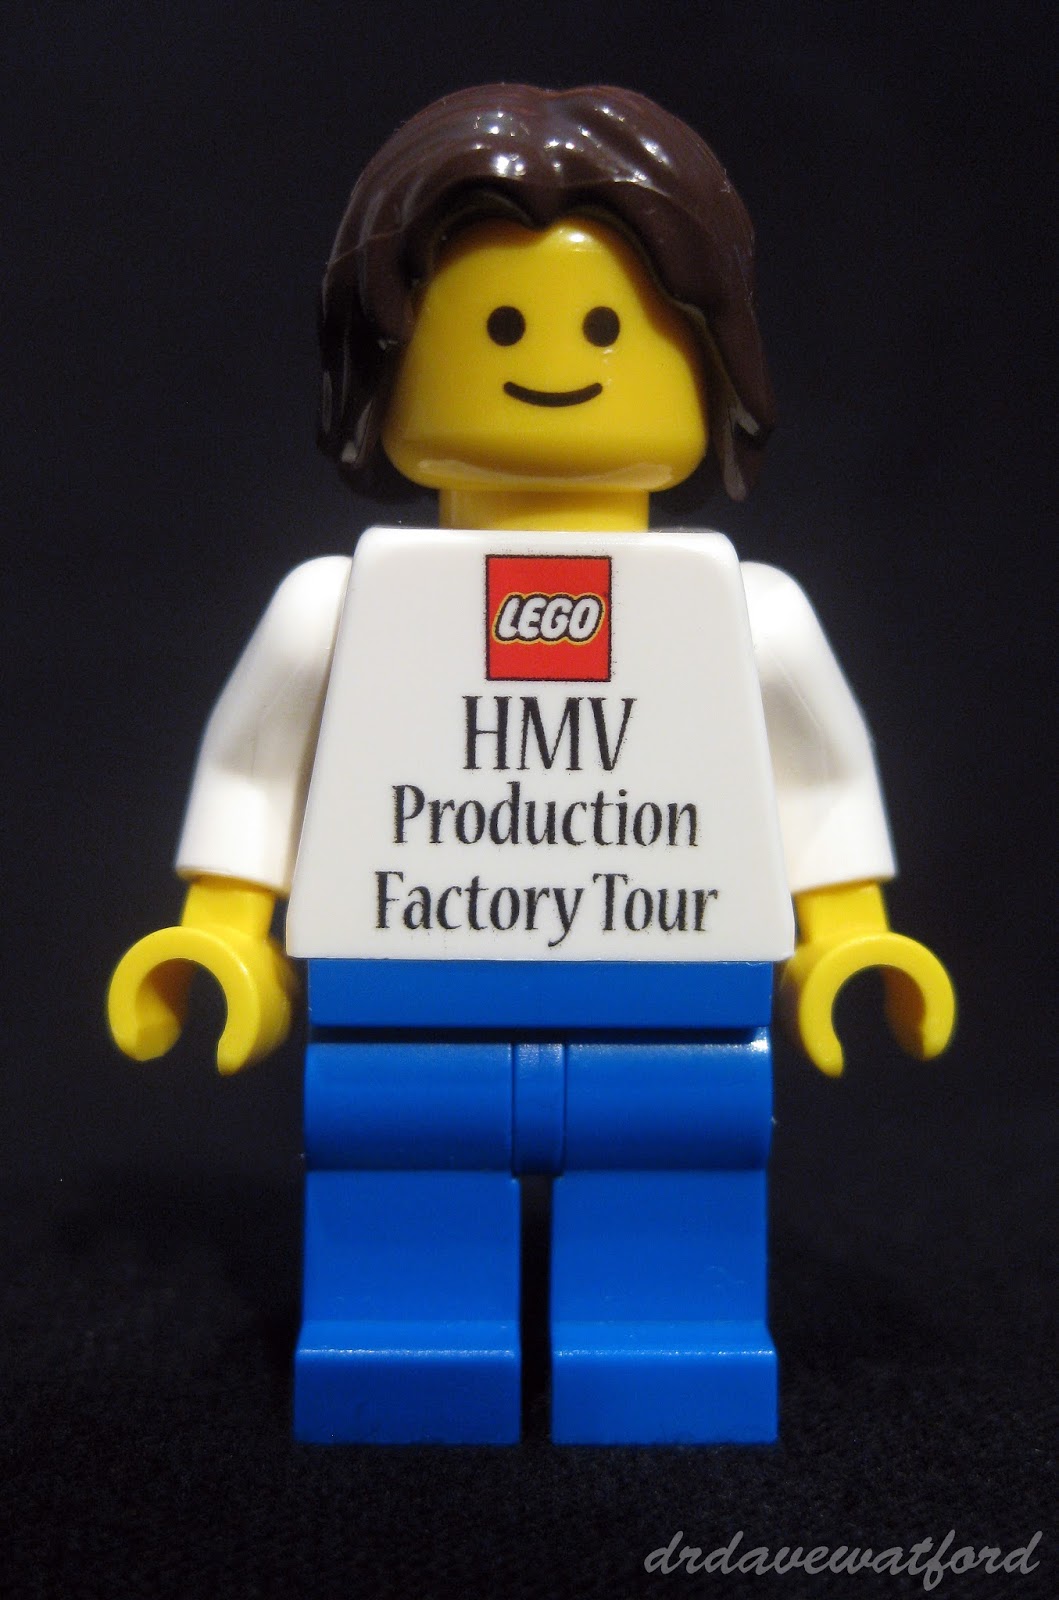 veltalende bredde indgang Gimme Lego: LEGO Inside Tour 2013 part 2